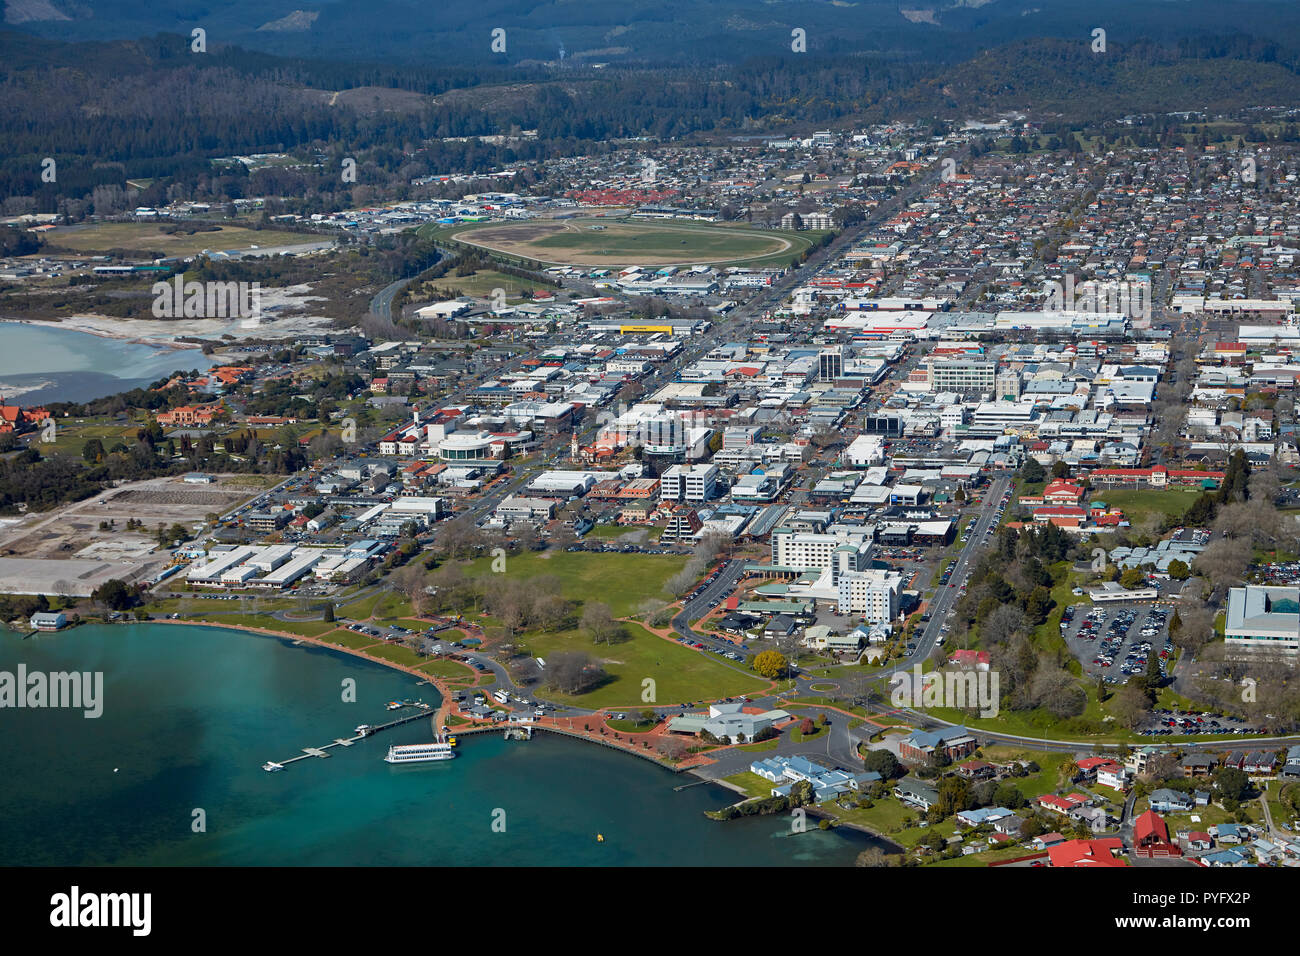 Le lac Rotorua, front de mer, et le centre ville, Rotorua, île du Nord, Nouvelle-Zélande - vue aérienne Banque D'Images